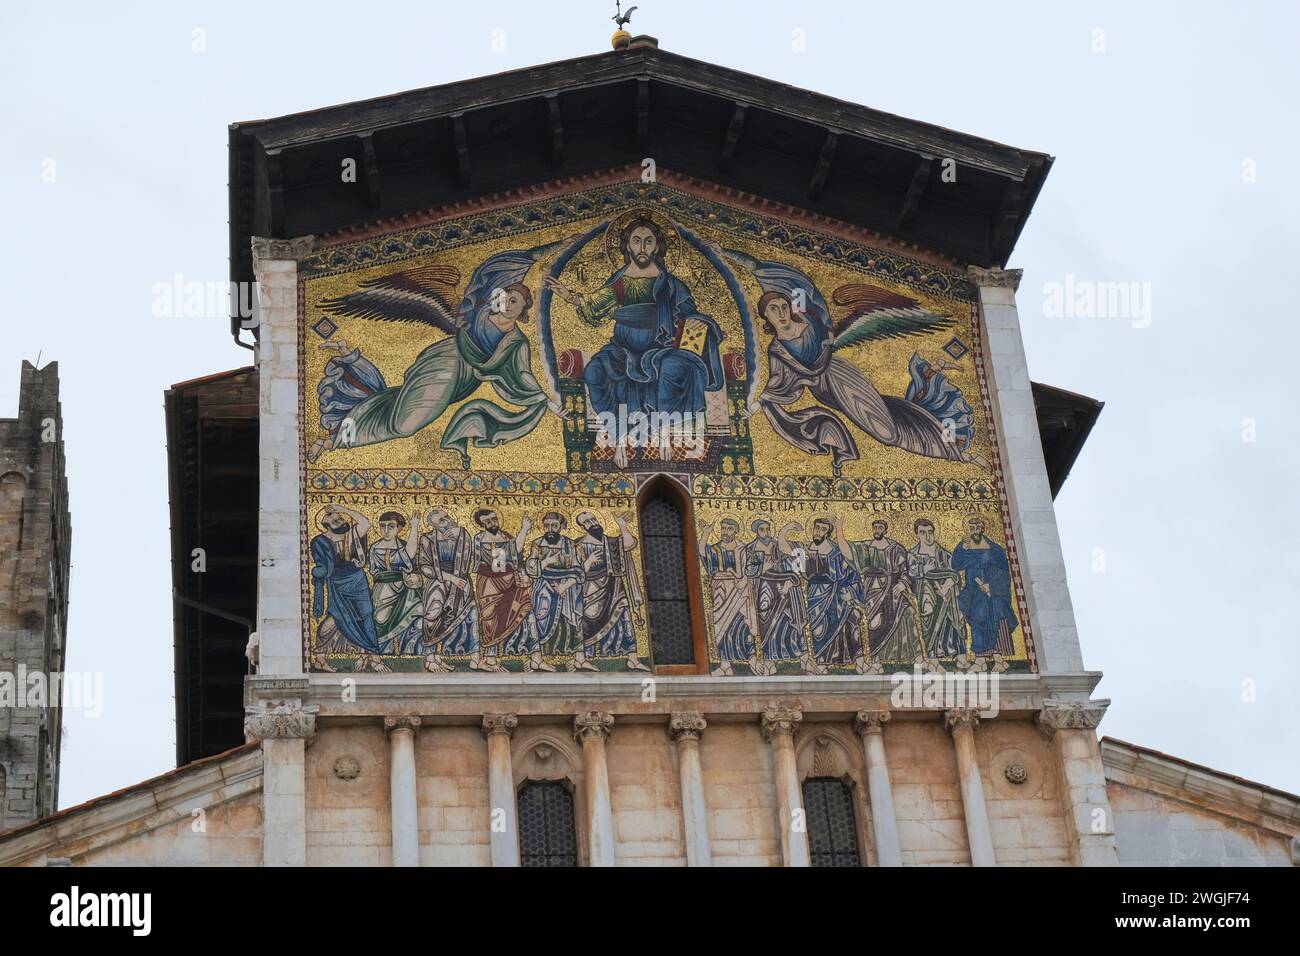 Lucques, Italie : fresque de la Basilique de San Frediano gros plan sur la Piazza San Frediano Banque D'Images